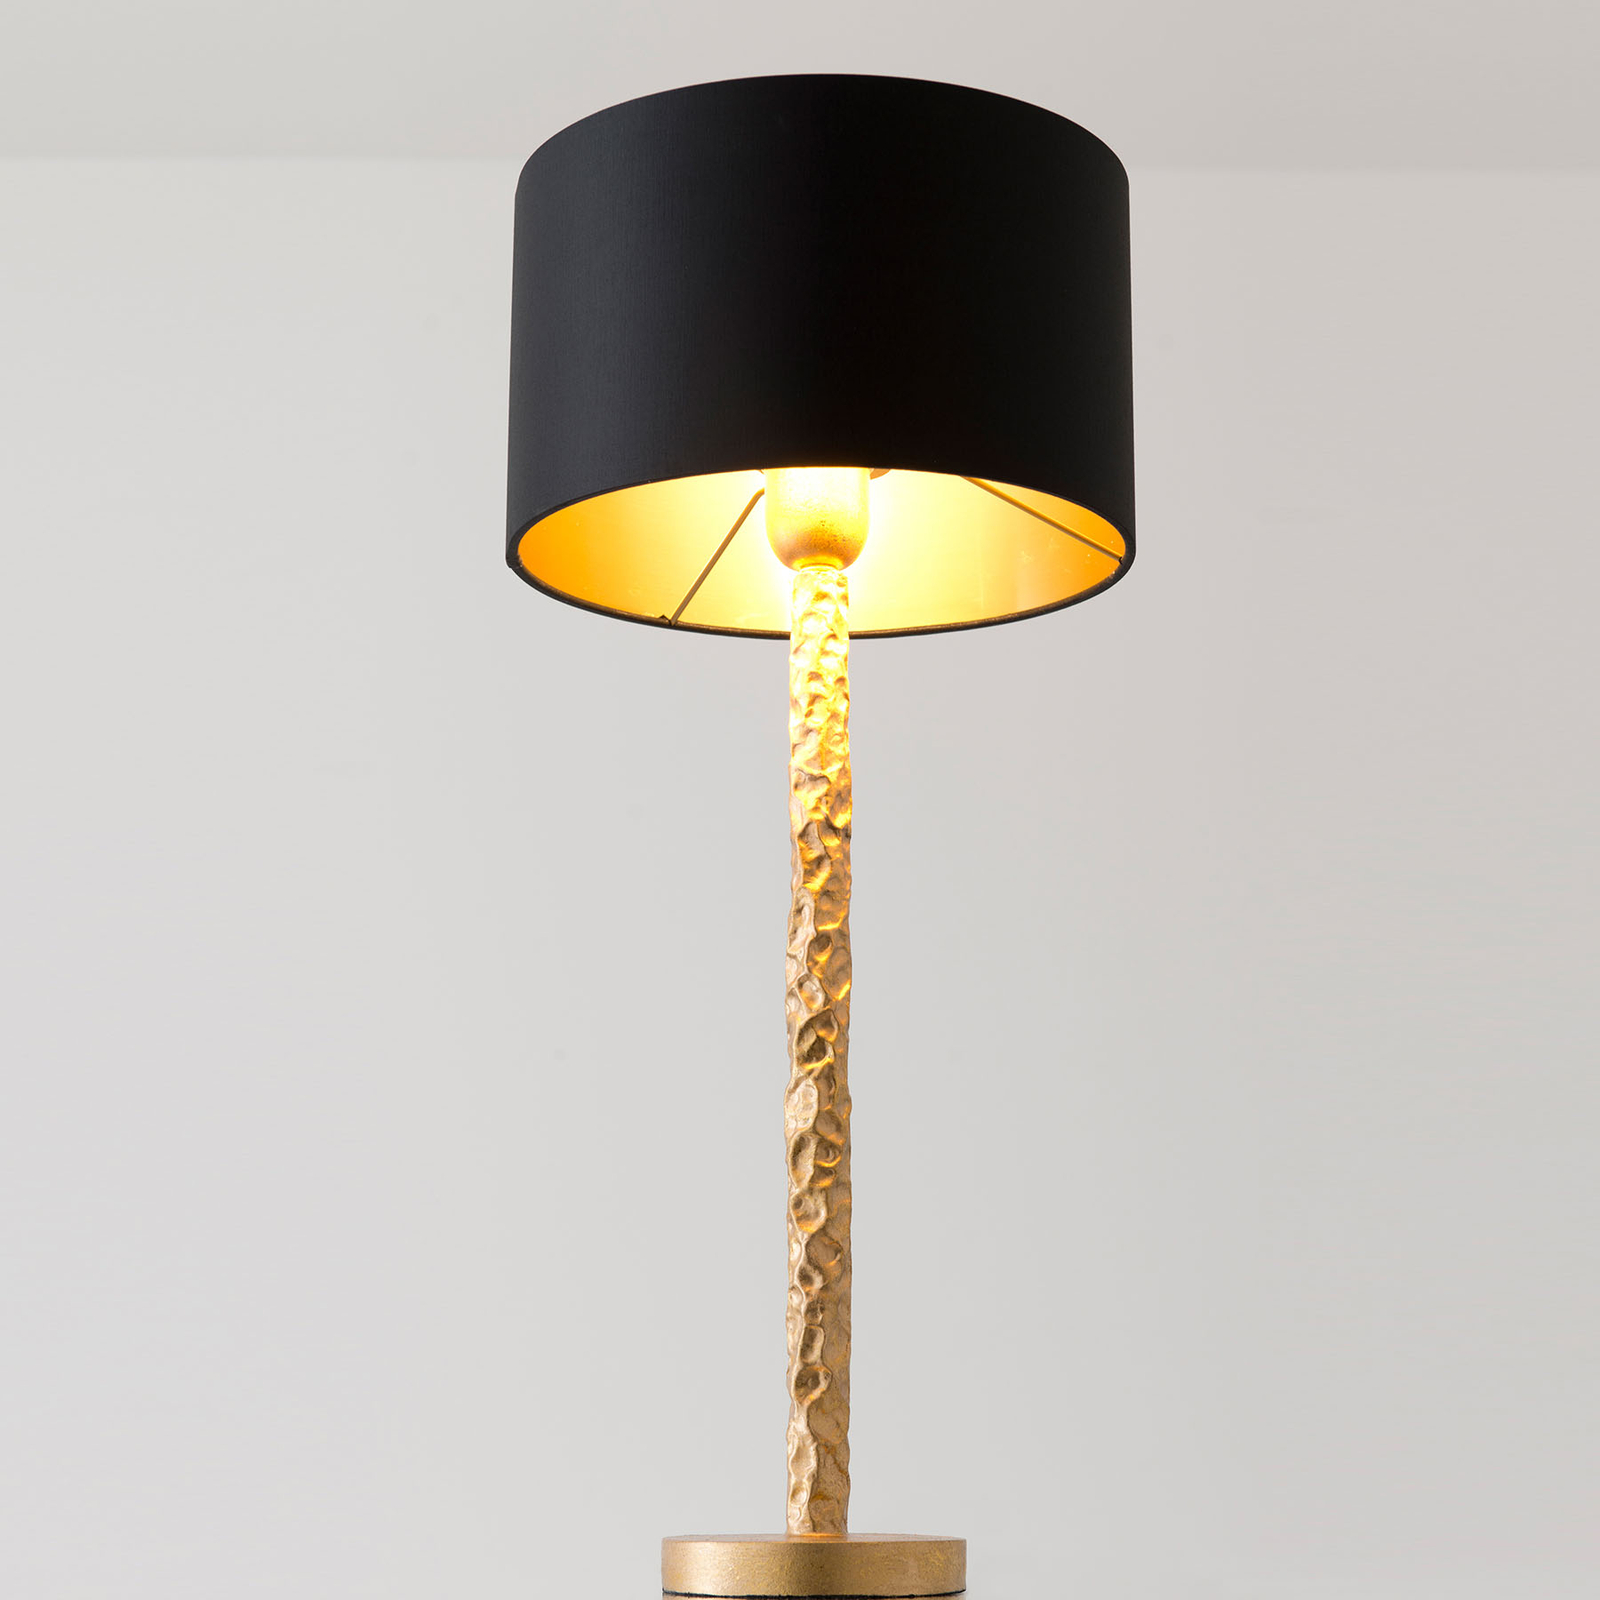 Tischlampe Cancelliere Rotonda schwarz/gold 57 cm